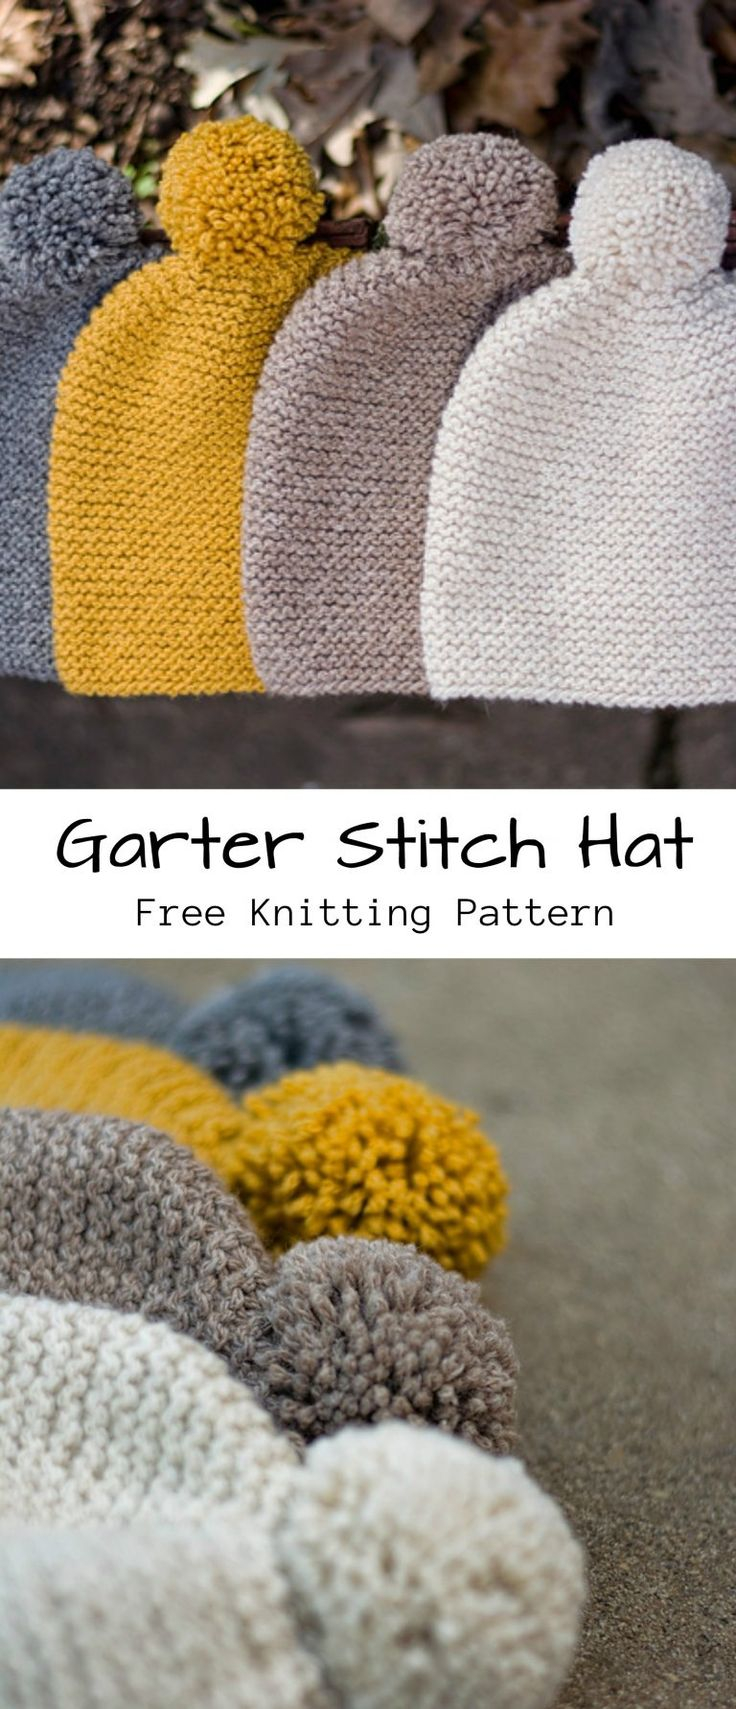 Free Baby Knitting Pattern Ba Knitting Patterns Stitches Garter Stitch Hat Free Knitting